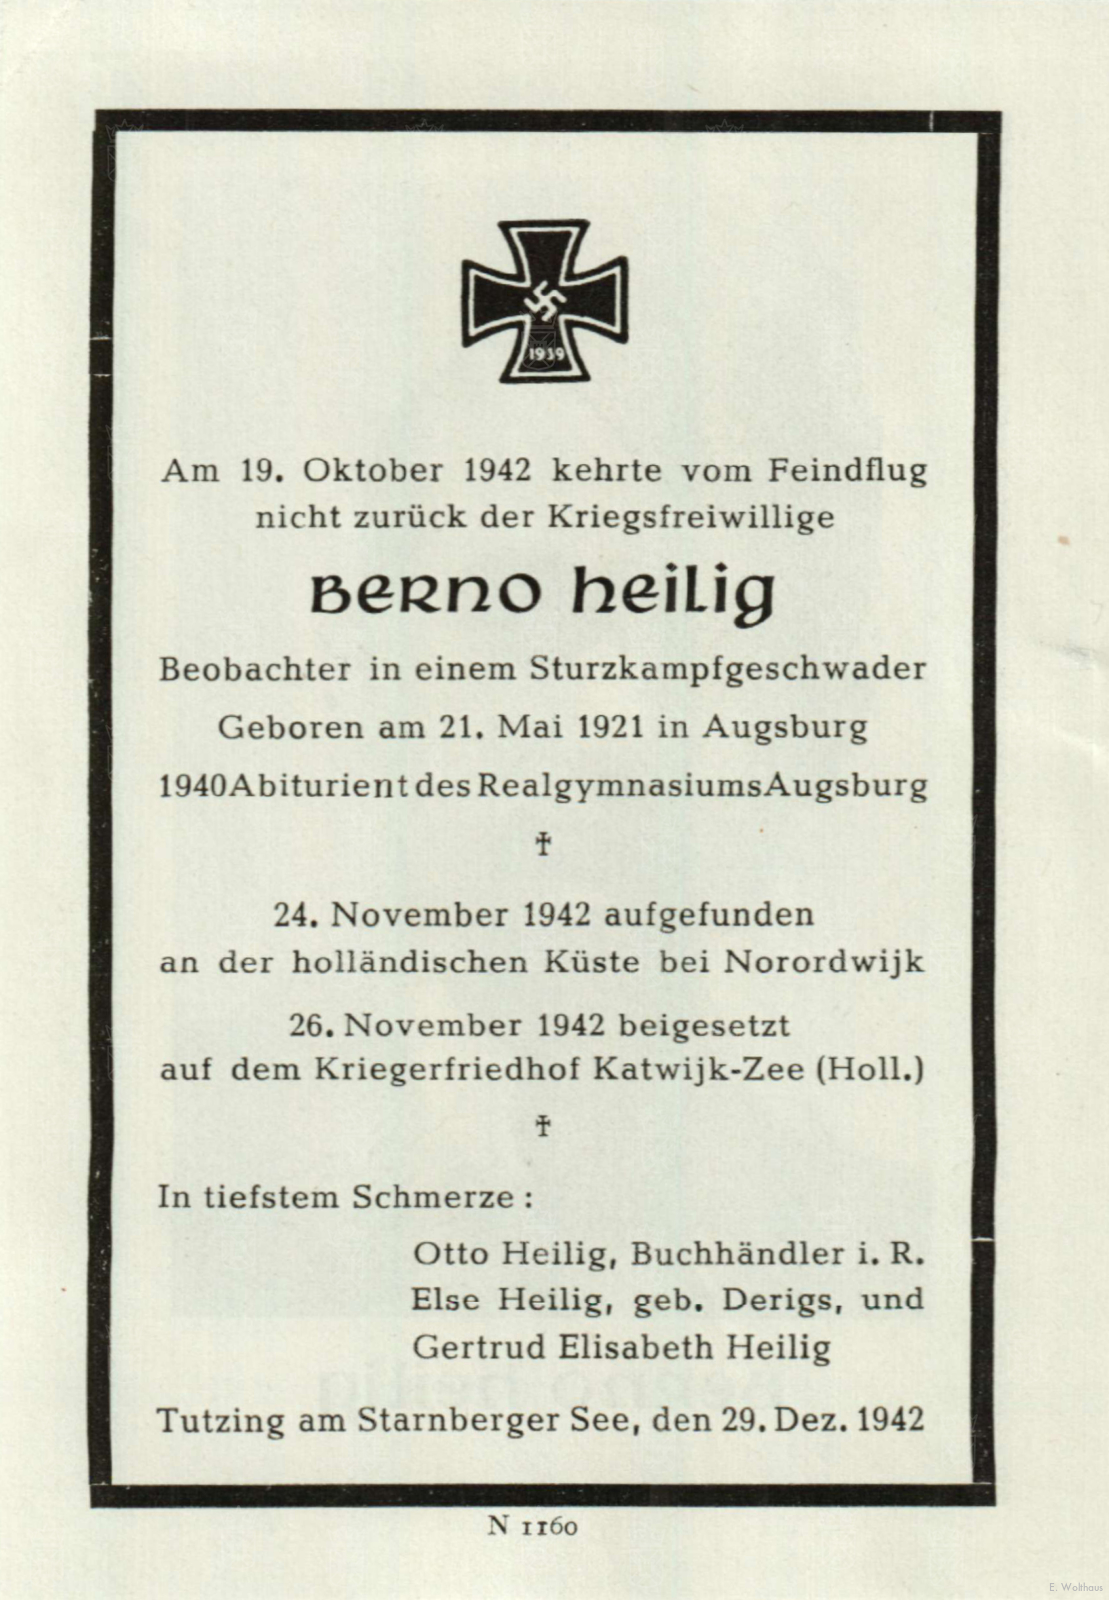 Het bidprentje uitgegeven ter nagedachtenis aan Berno Heilig.